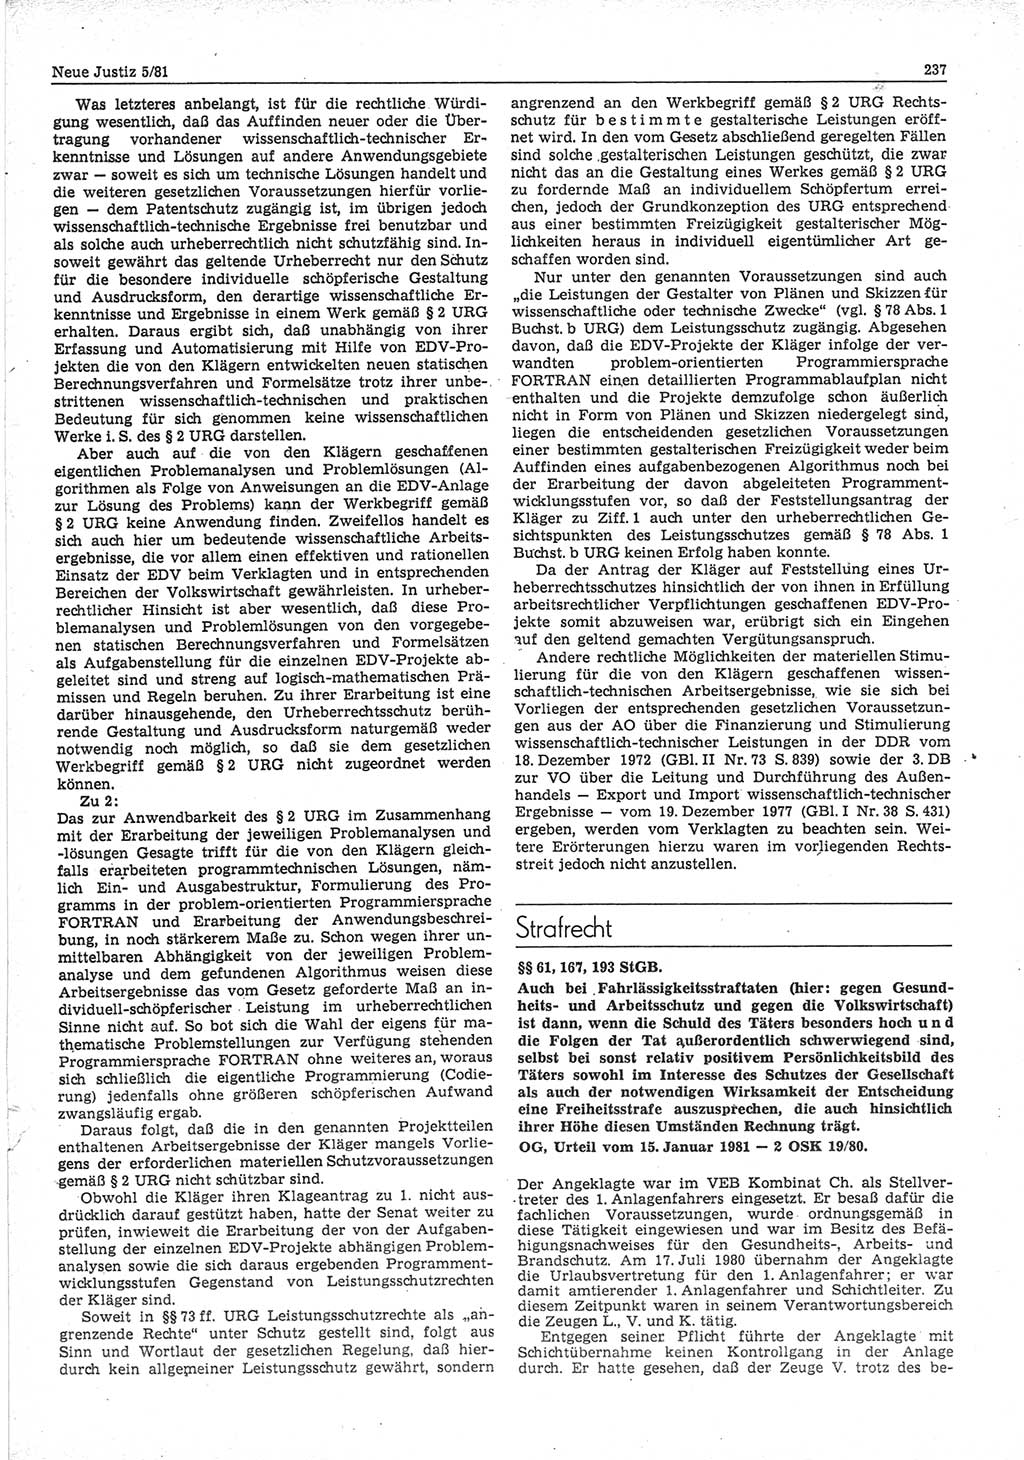 Neue Justiz (NJ), Zeitschrift für sozialistisches Recht und Gesetzlichkeit [Deutsche Demokratische Republik (DDR)], 35. Jahrgang 1981, Seite 237 (NJ DDR 1981, S. 237)